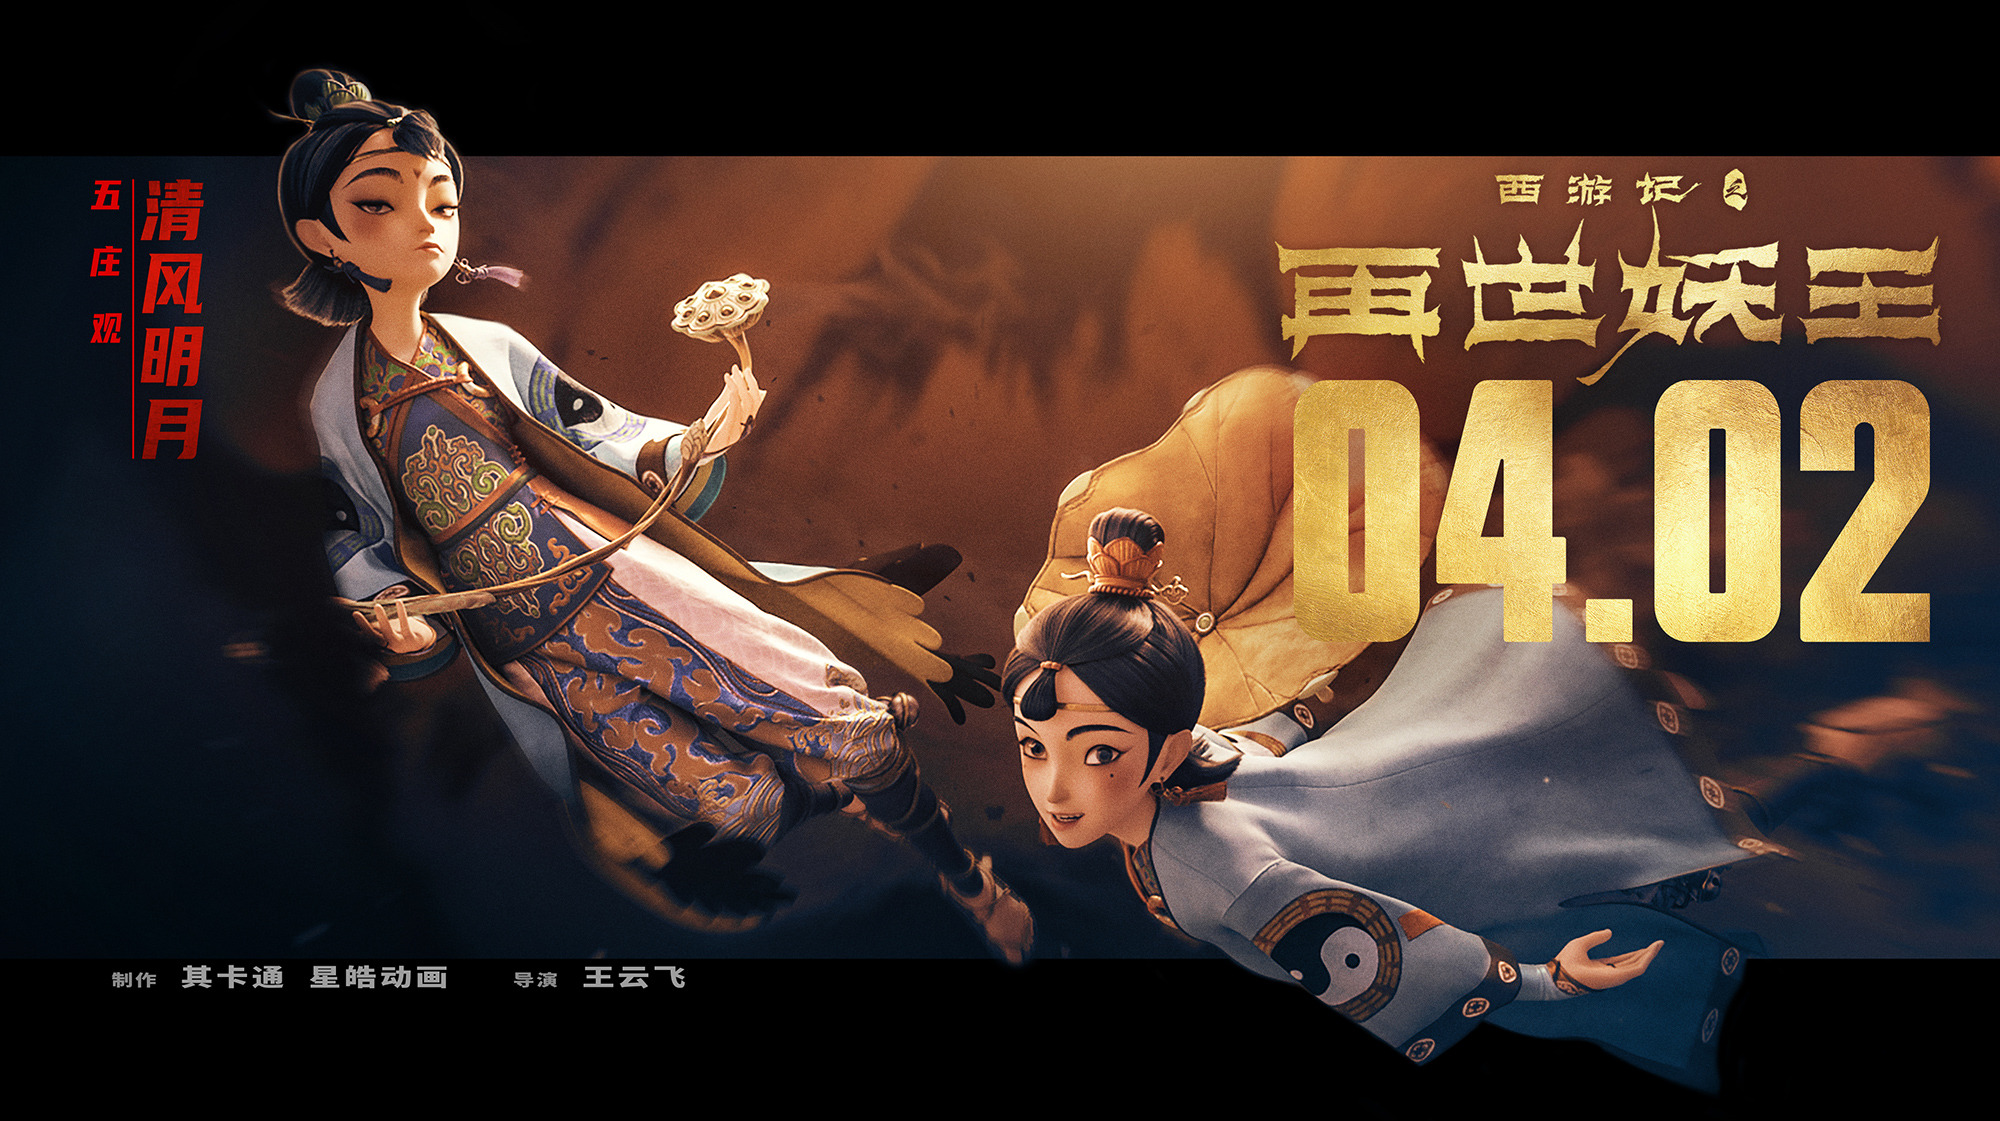 Mega Sized Movie Poster Image for Xi You Ji Zhi Zai Shi Yao Wang (#10 of 21)